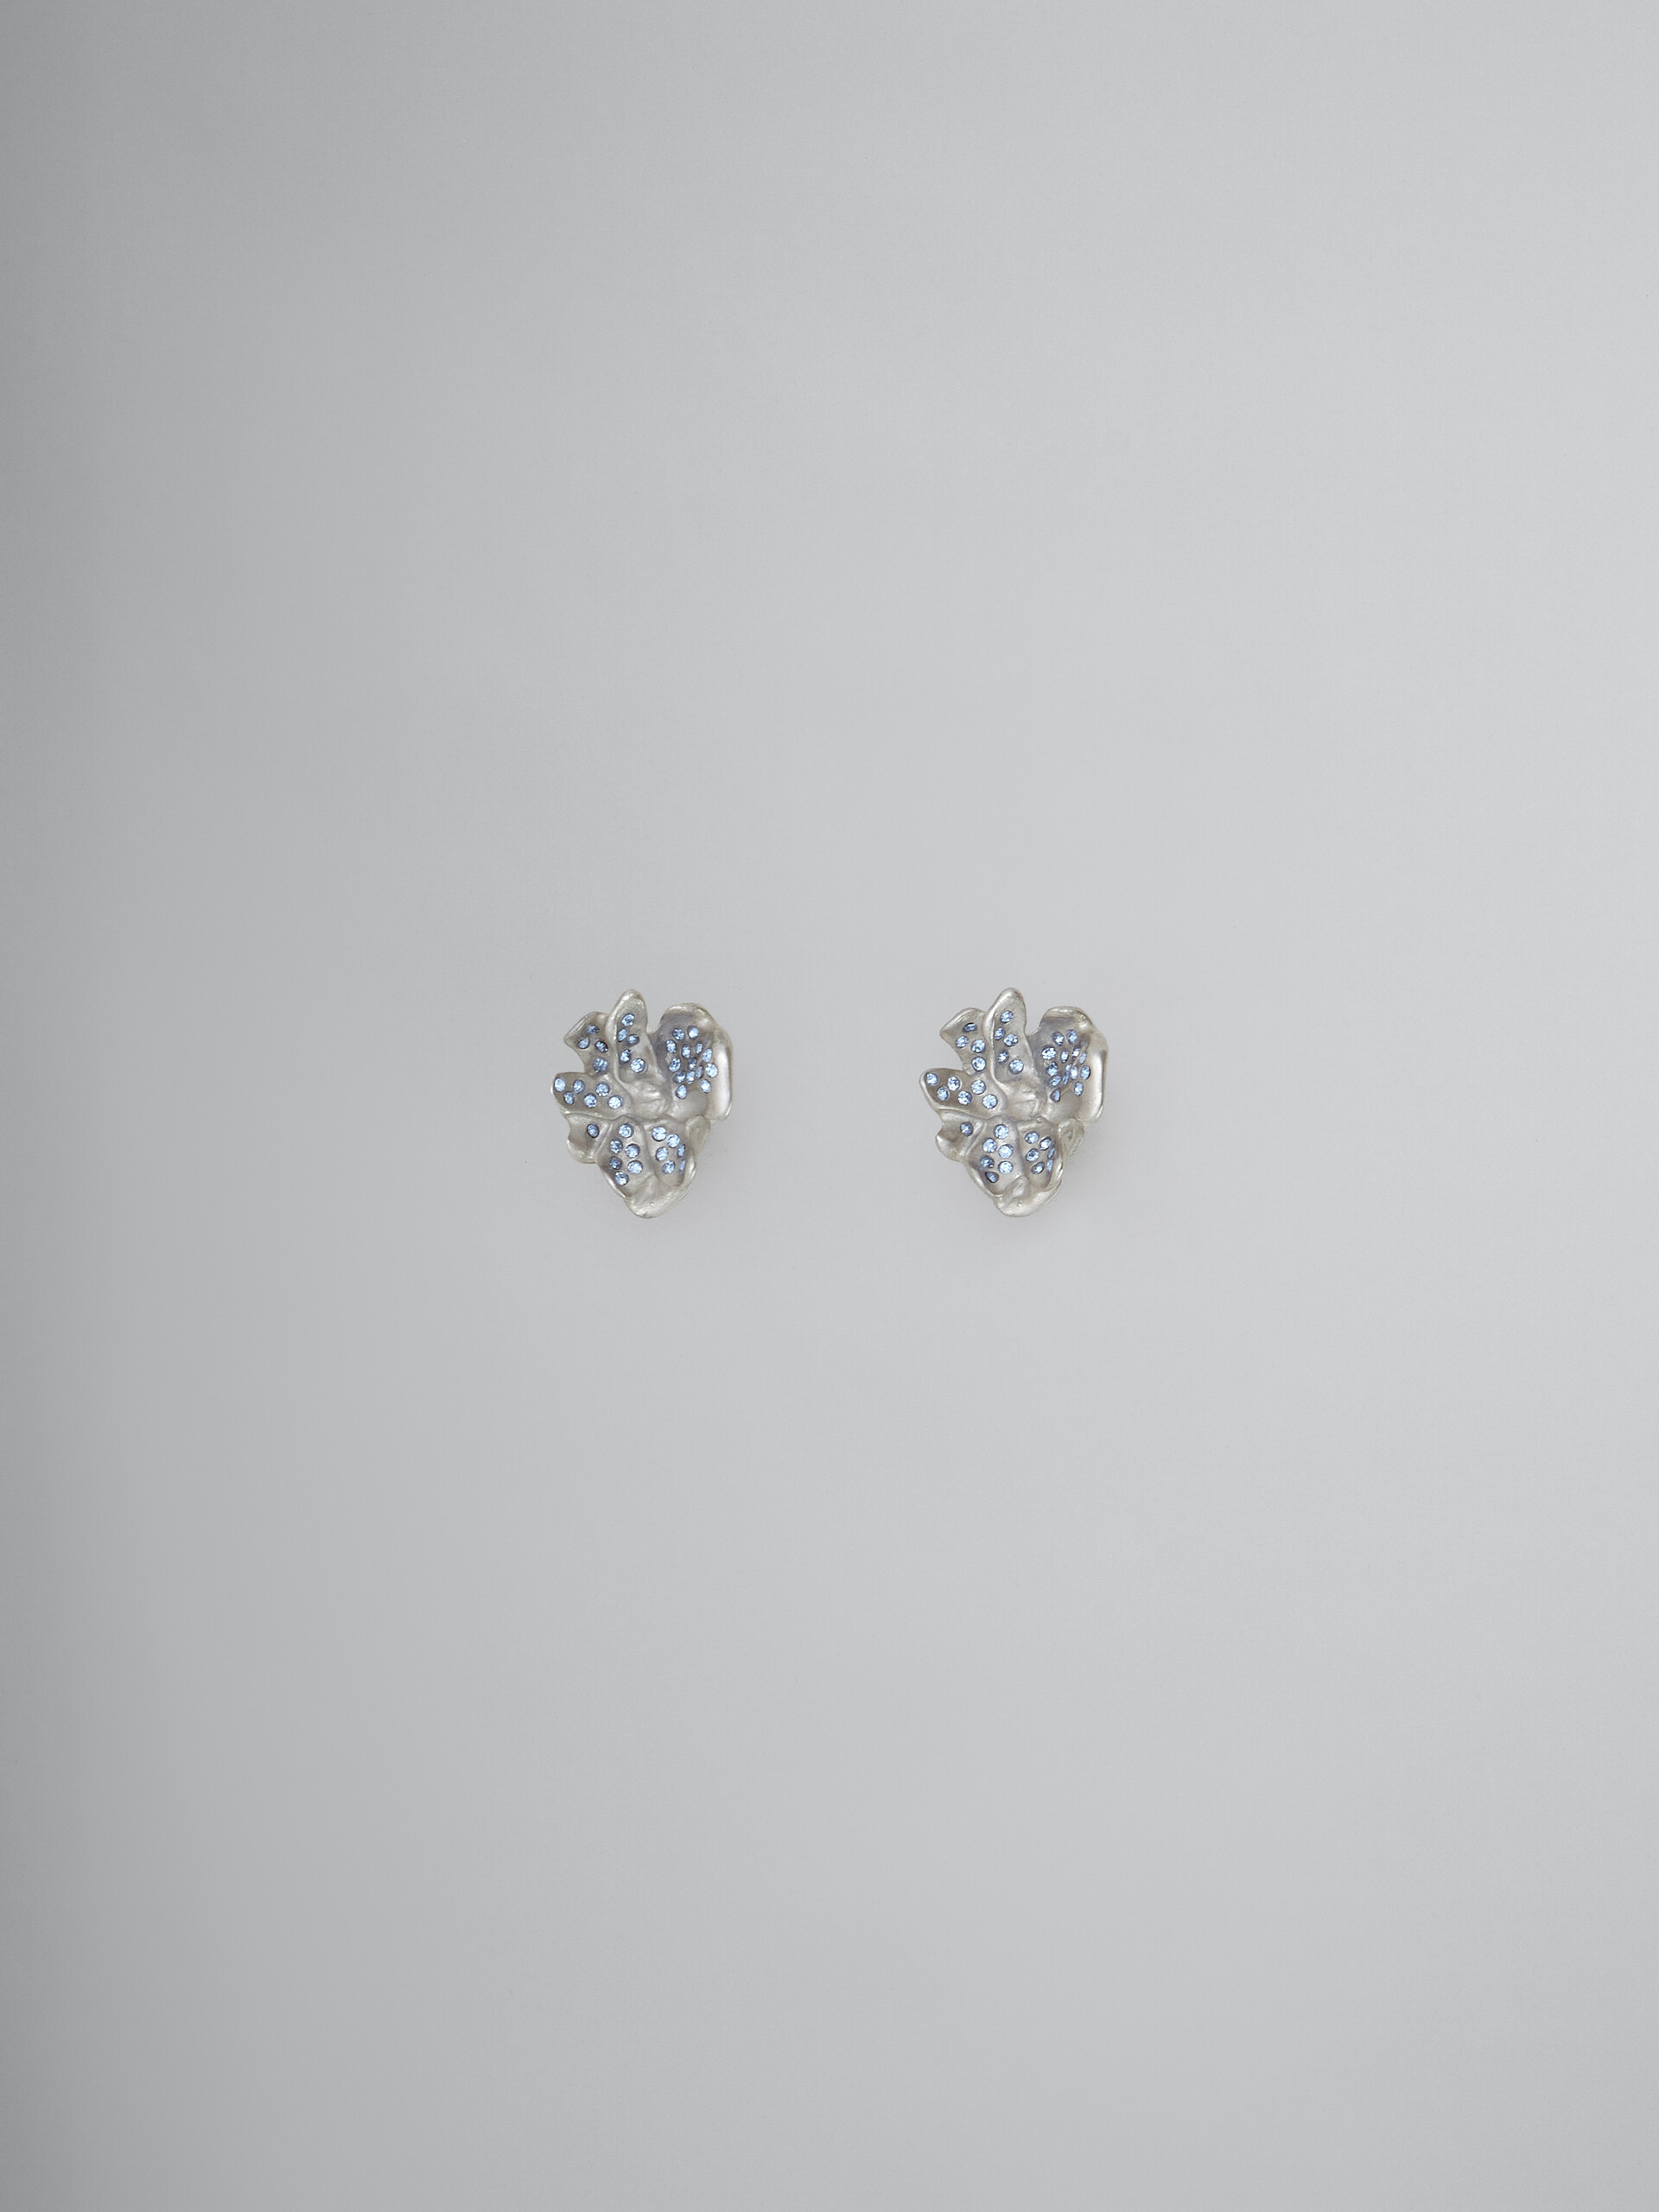 Metal flower stud earrings with blue crystals - Earrings - Image 1